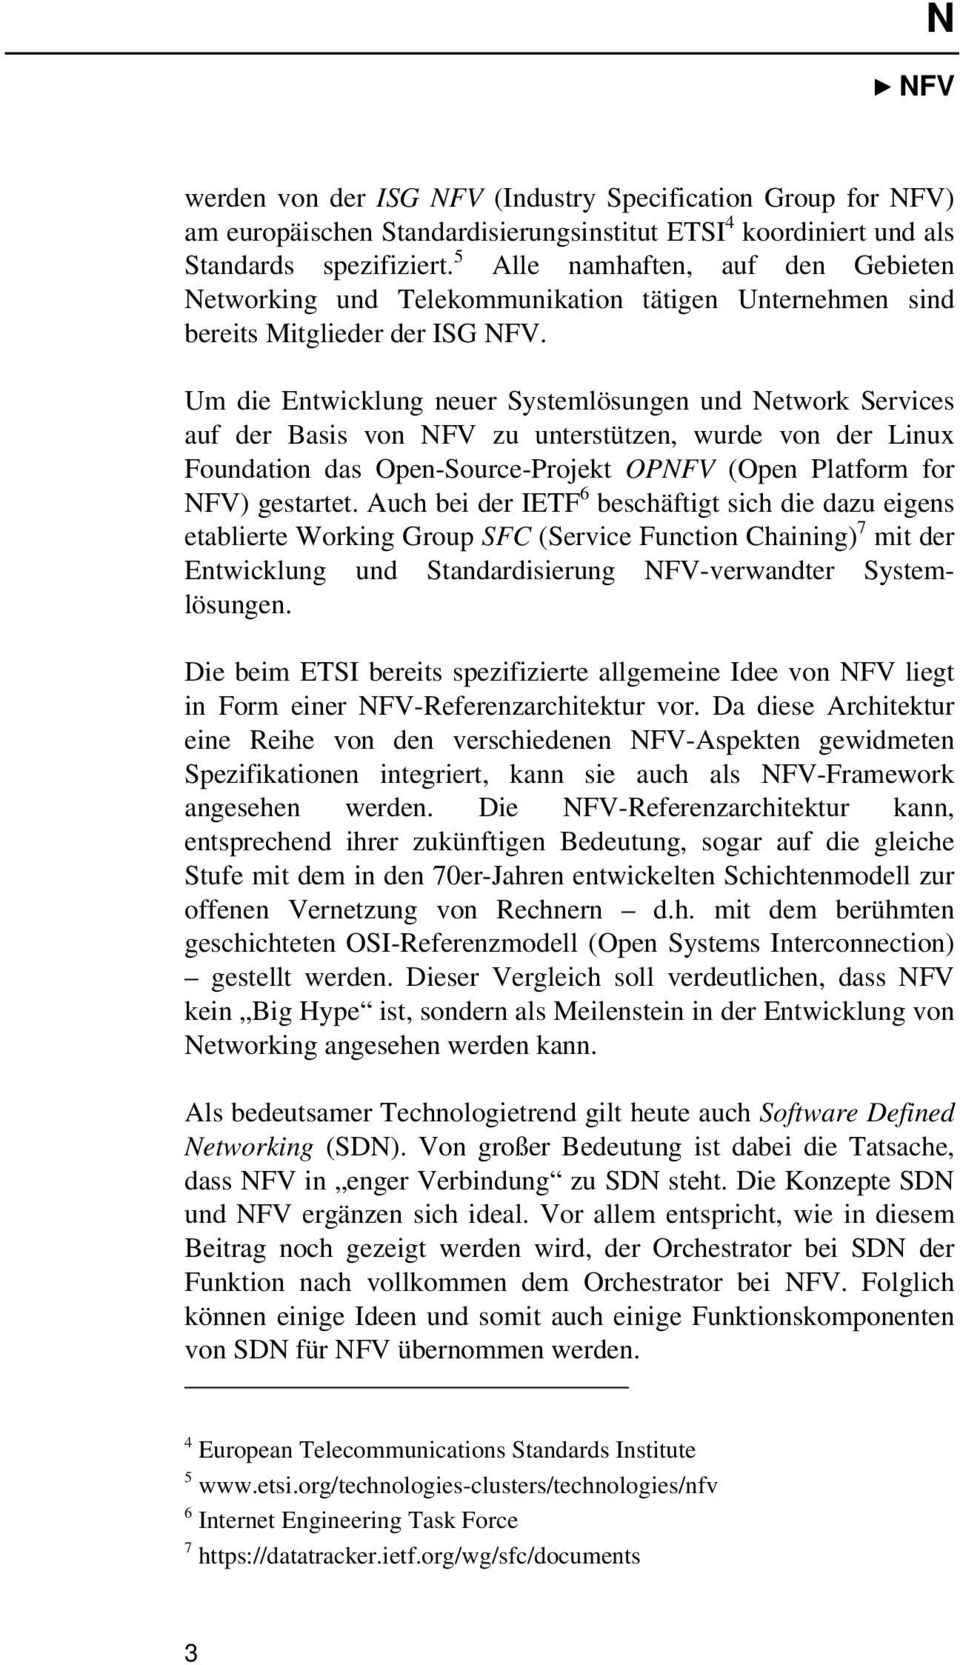 Um die Entwicklung neuer Systemlösungen und Network Services auf der Basis von NFV zu unterstützen, wurde von der Linux Foundation das Open-Source-Projekt OPNFV (Open Platform for NFV) gestartet.